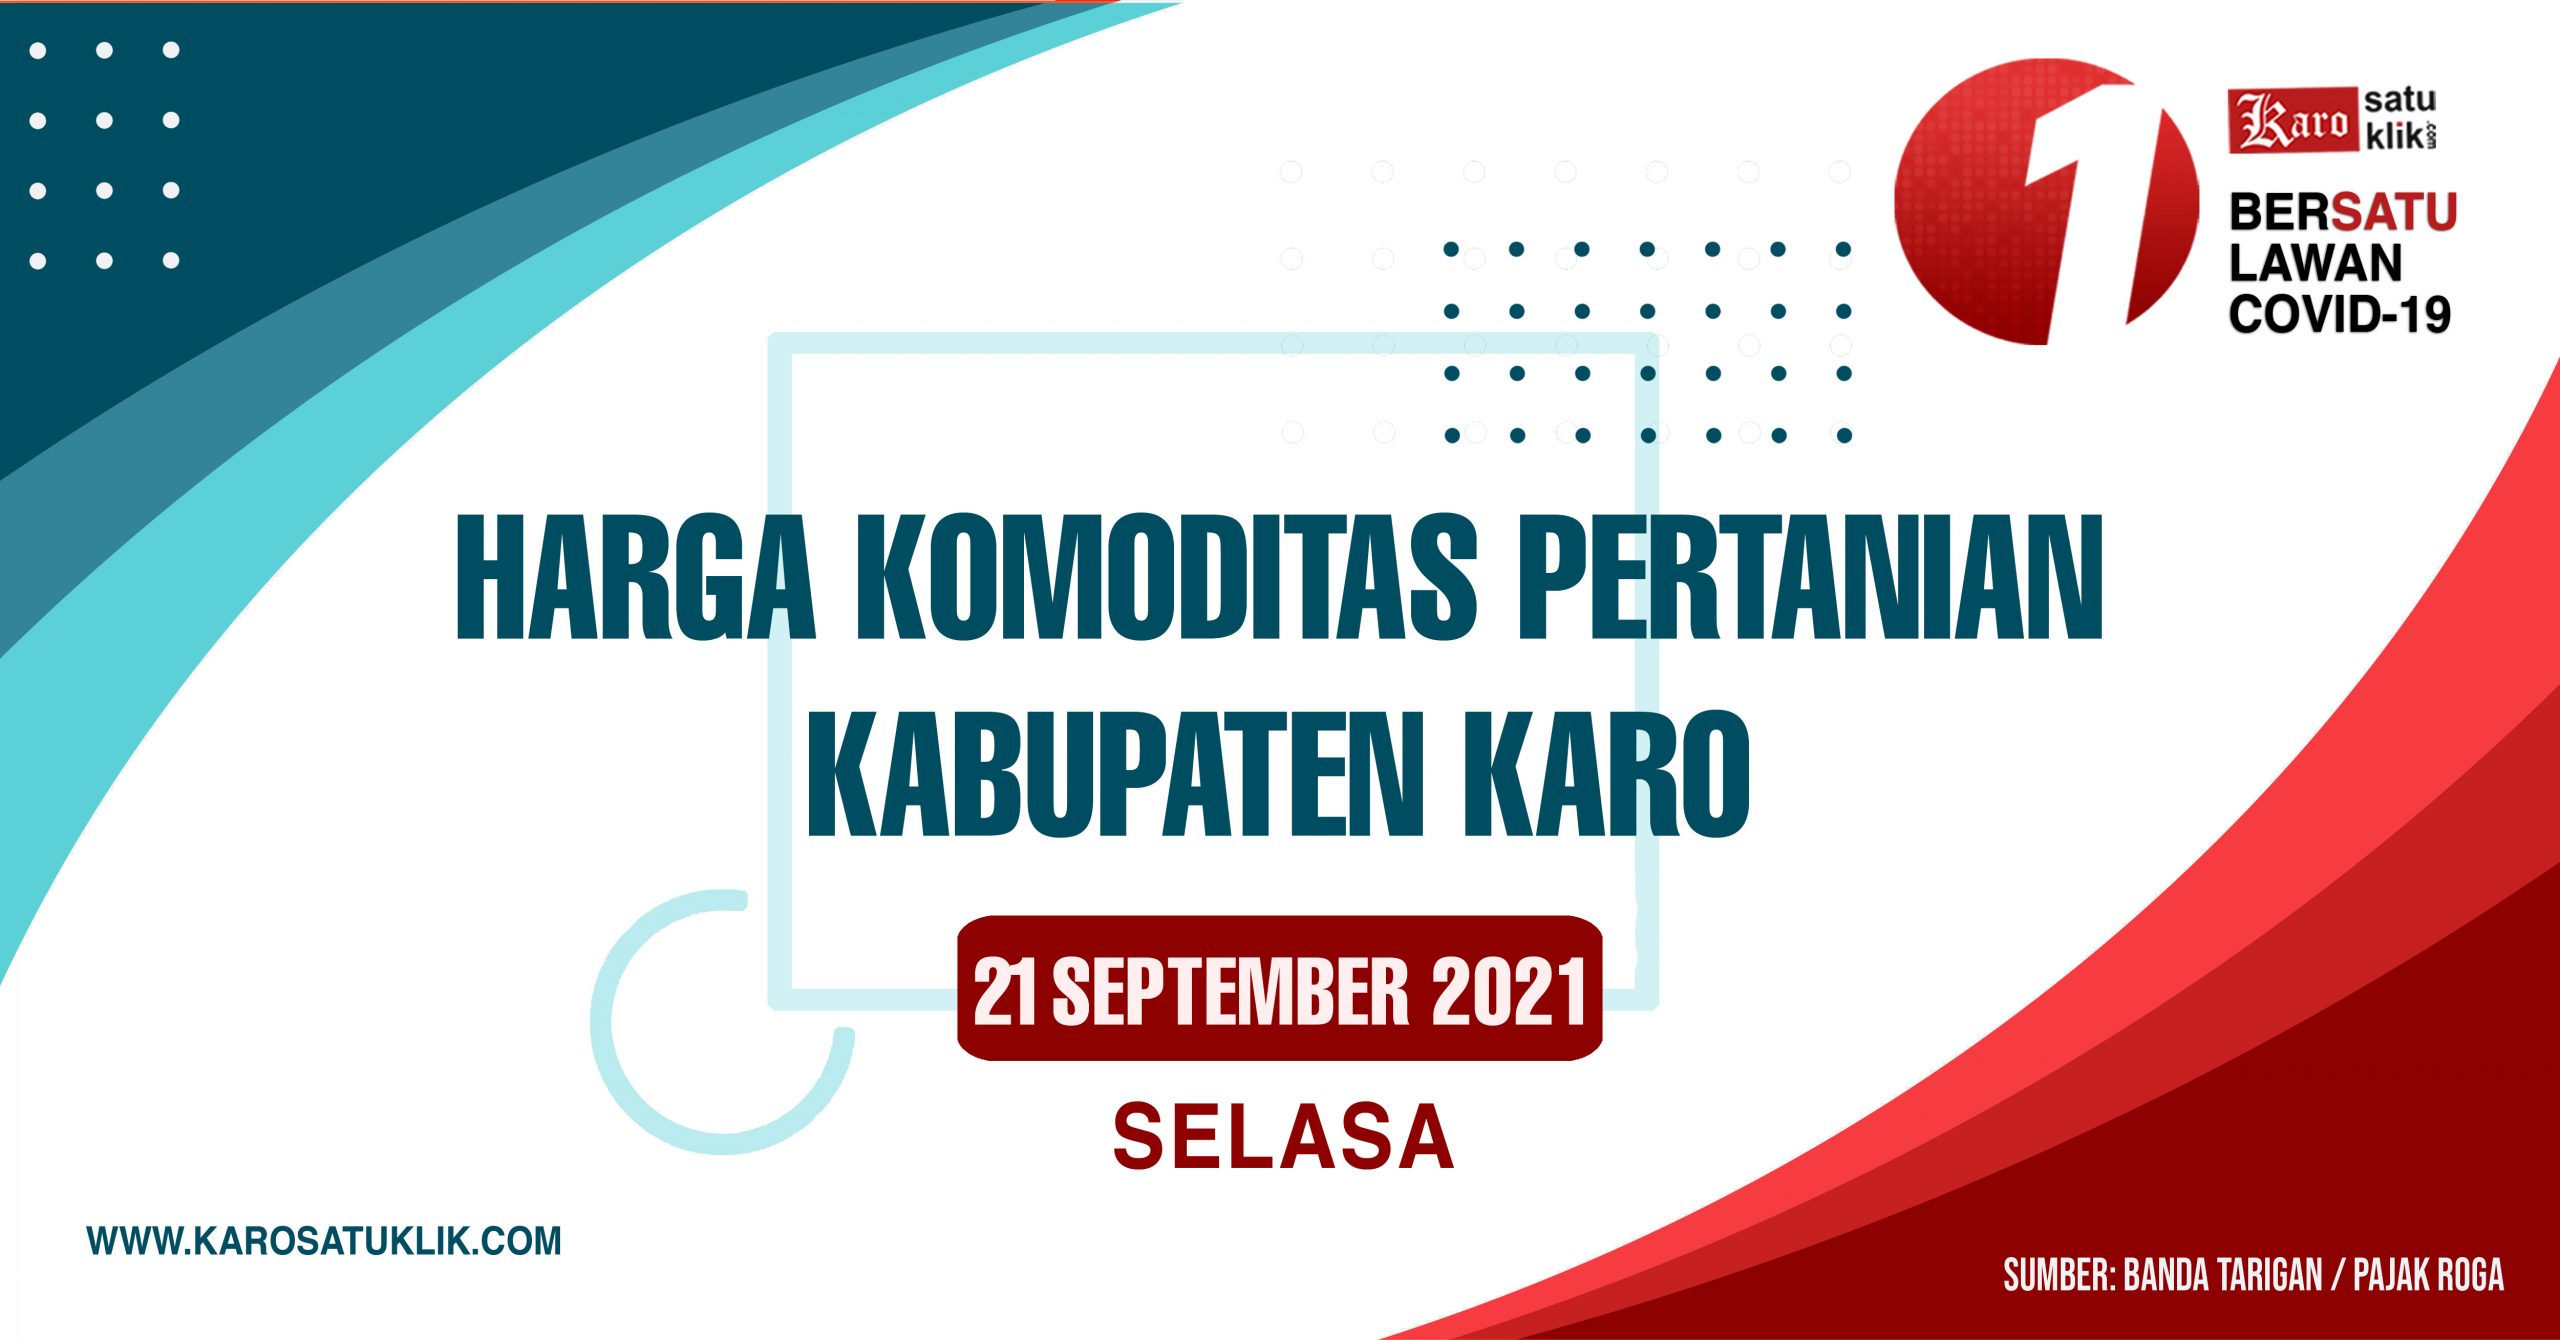 Daftar Harga Komoditas Pertanian Kabupaten Karo, 21 September 2021